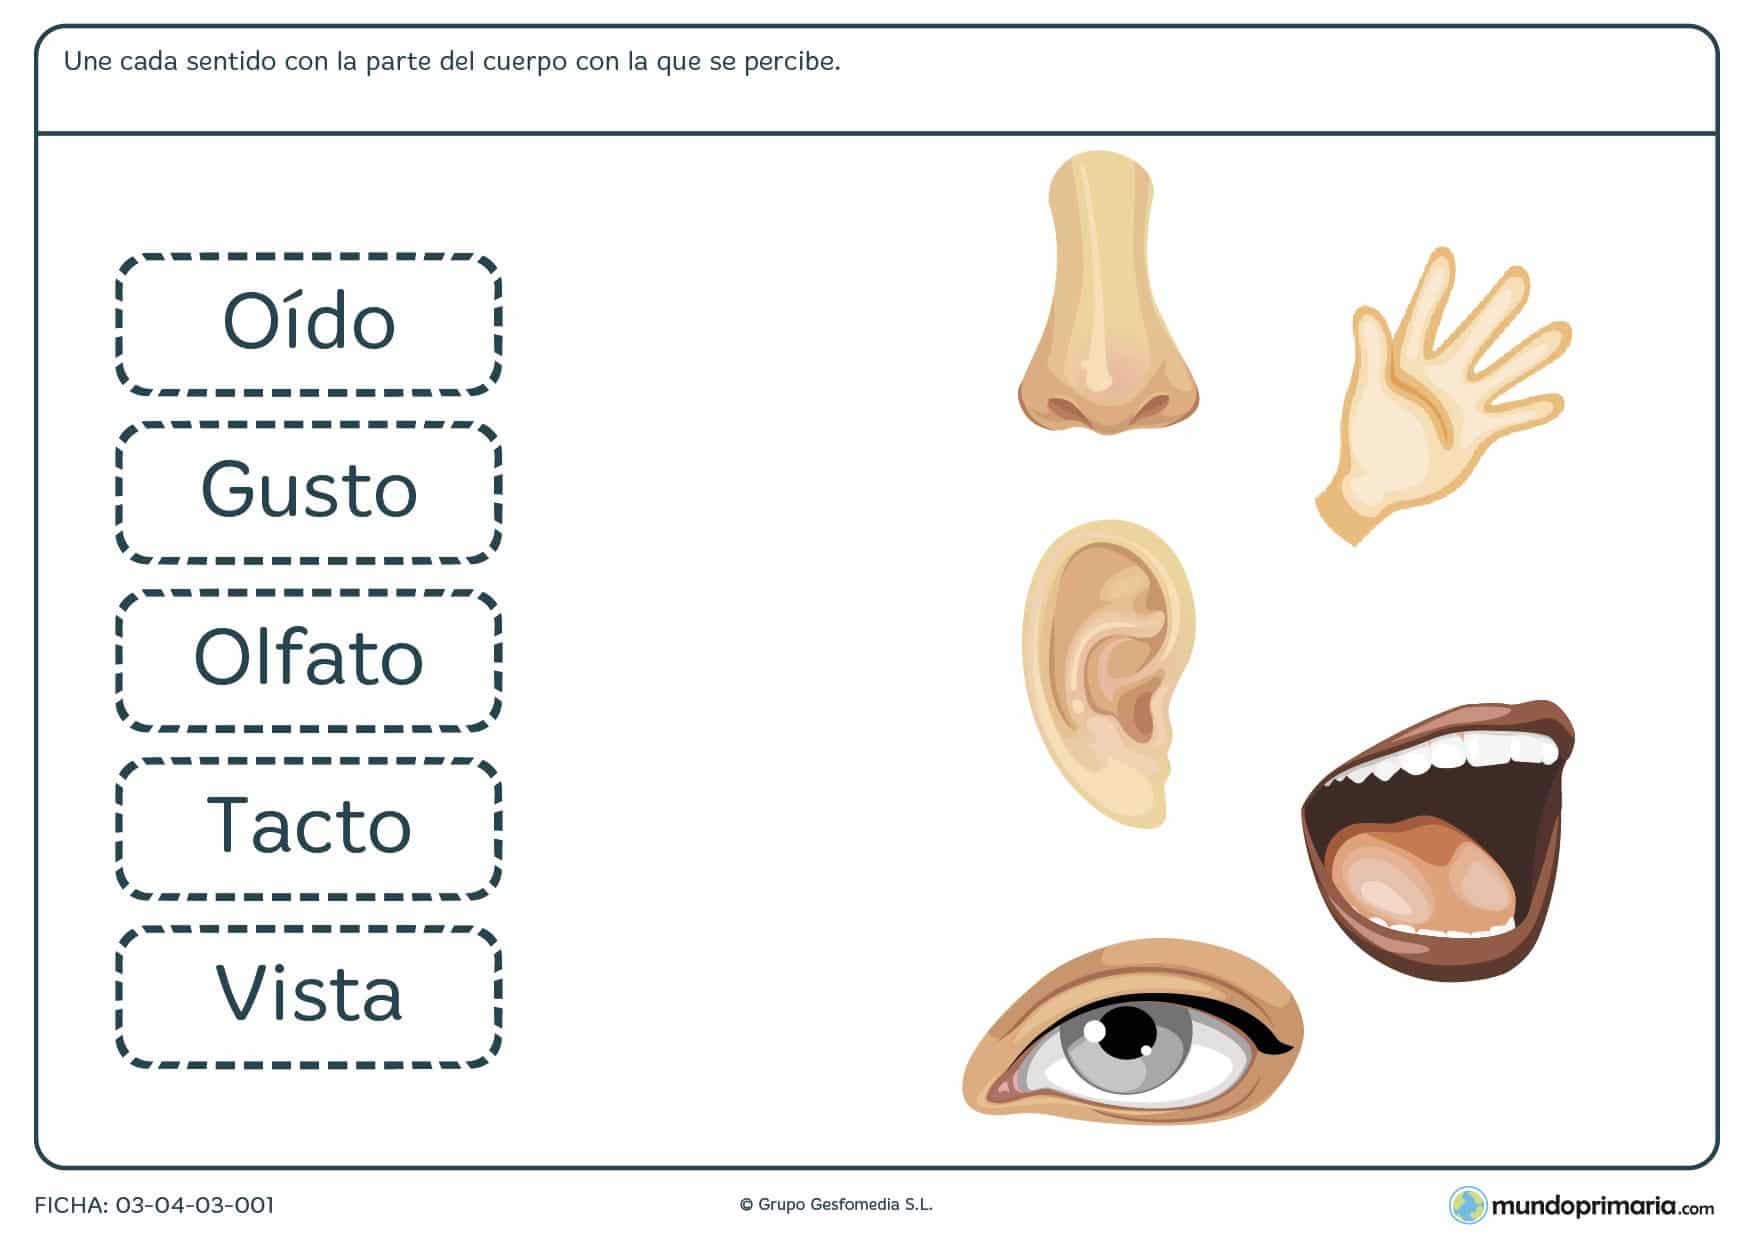 Ficha de los sentidos para realizar ejercicos sobre los sentidos de percepción destinado a niños de primaria